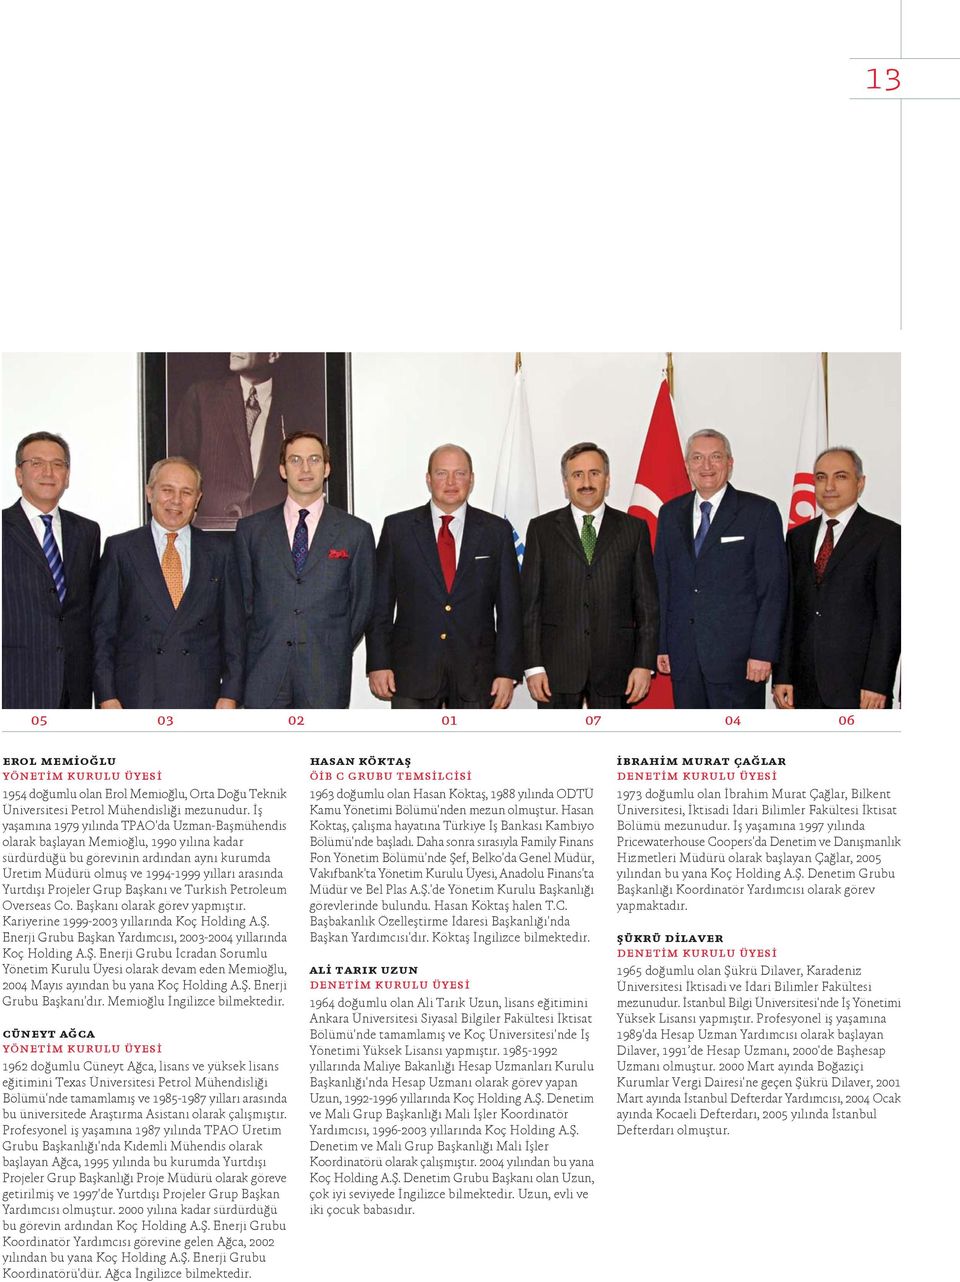 fl Projeler Grup Baflkan ve Turkish Petroleum Overseas Co. Baflkan olarak görev yapm flt r. Kariyerine 1999-2003 y llar nda Koç Holding A.fi.